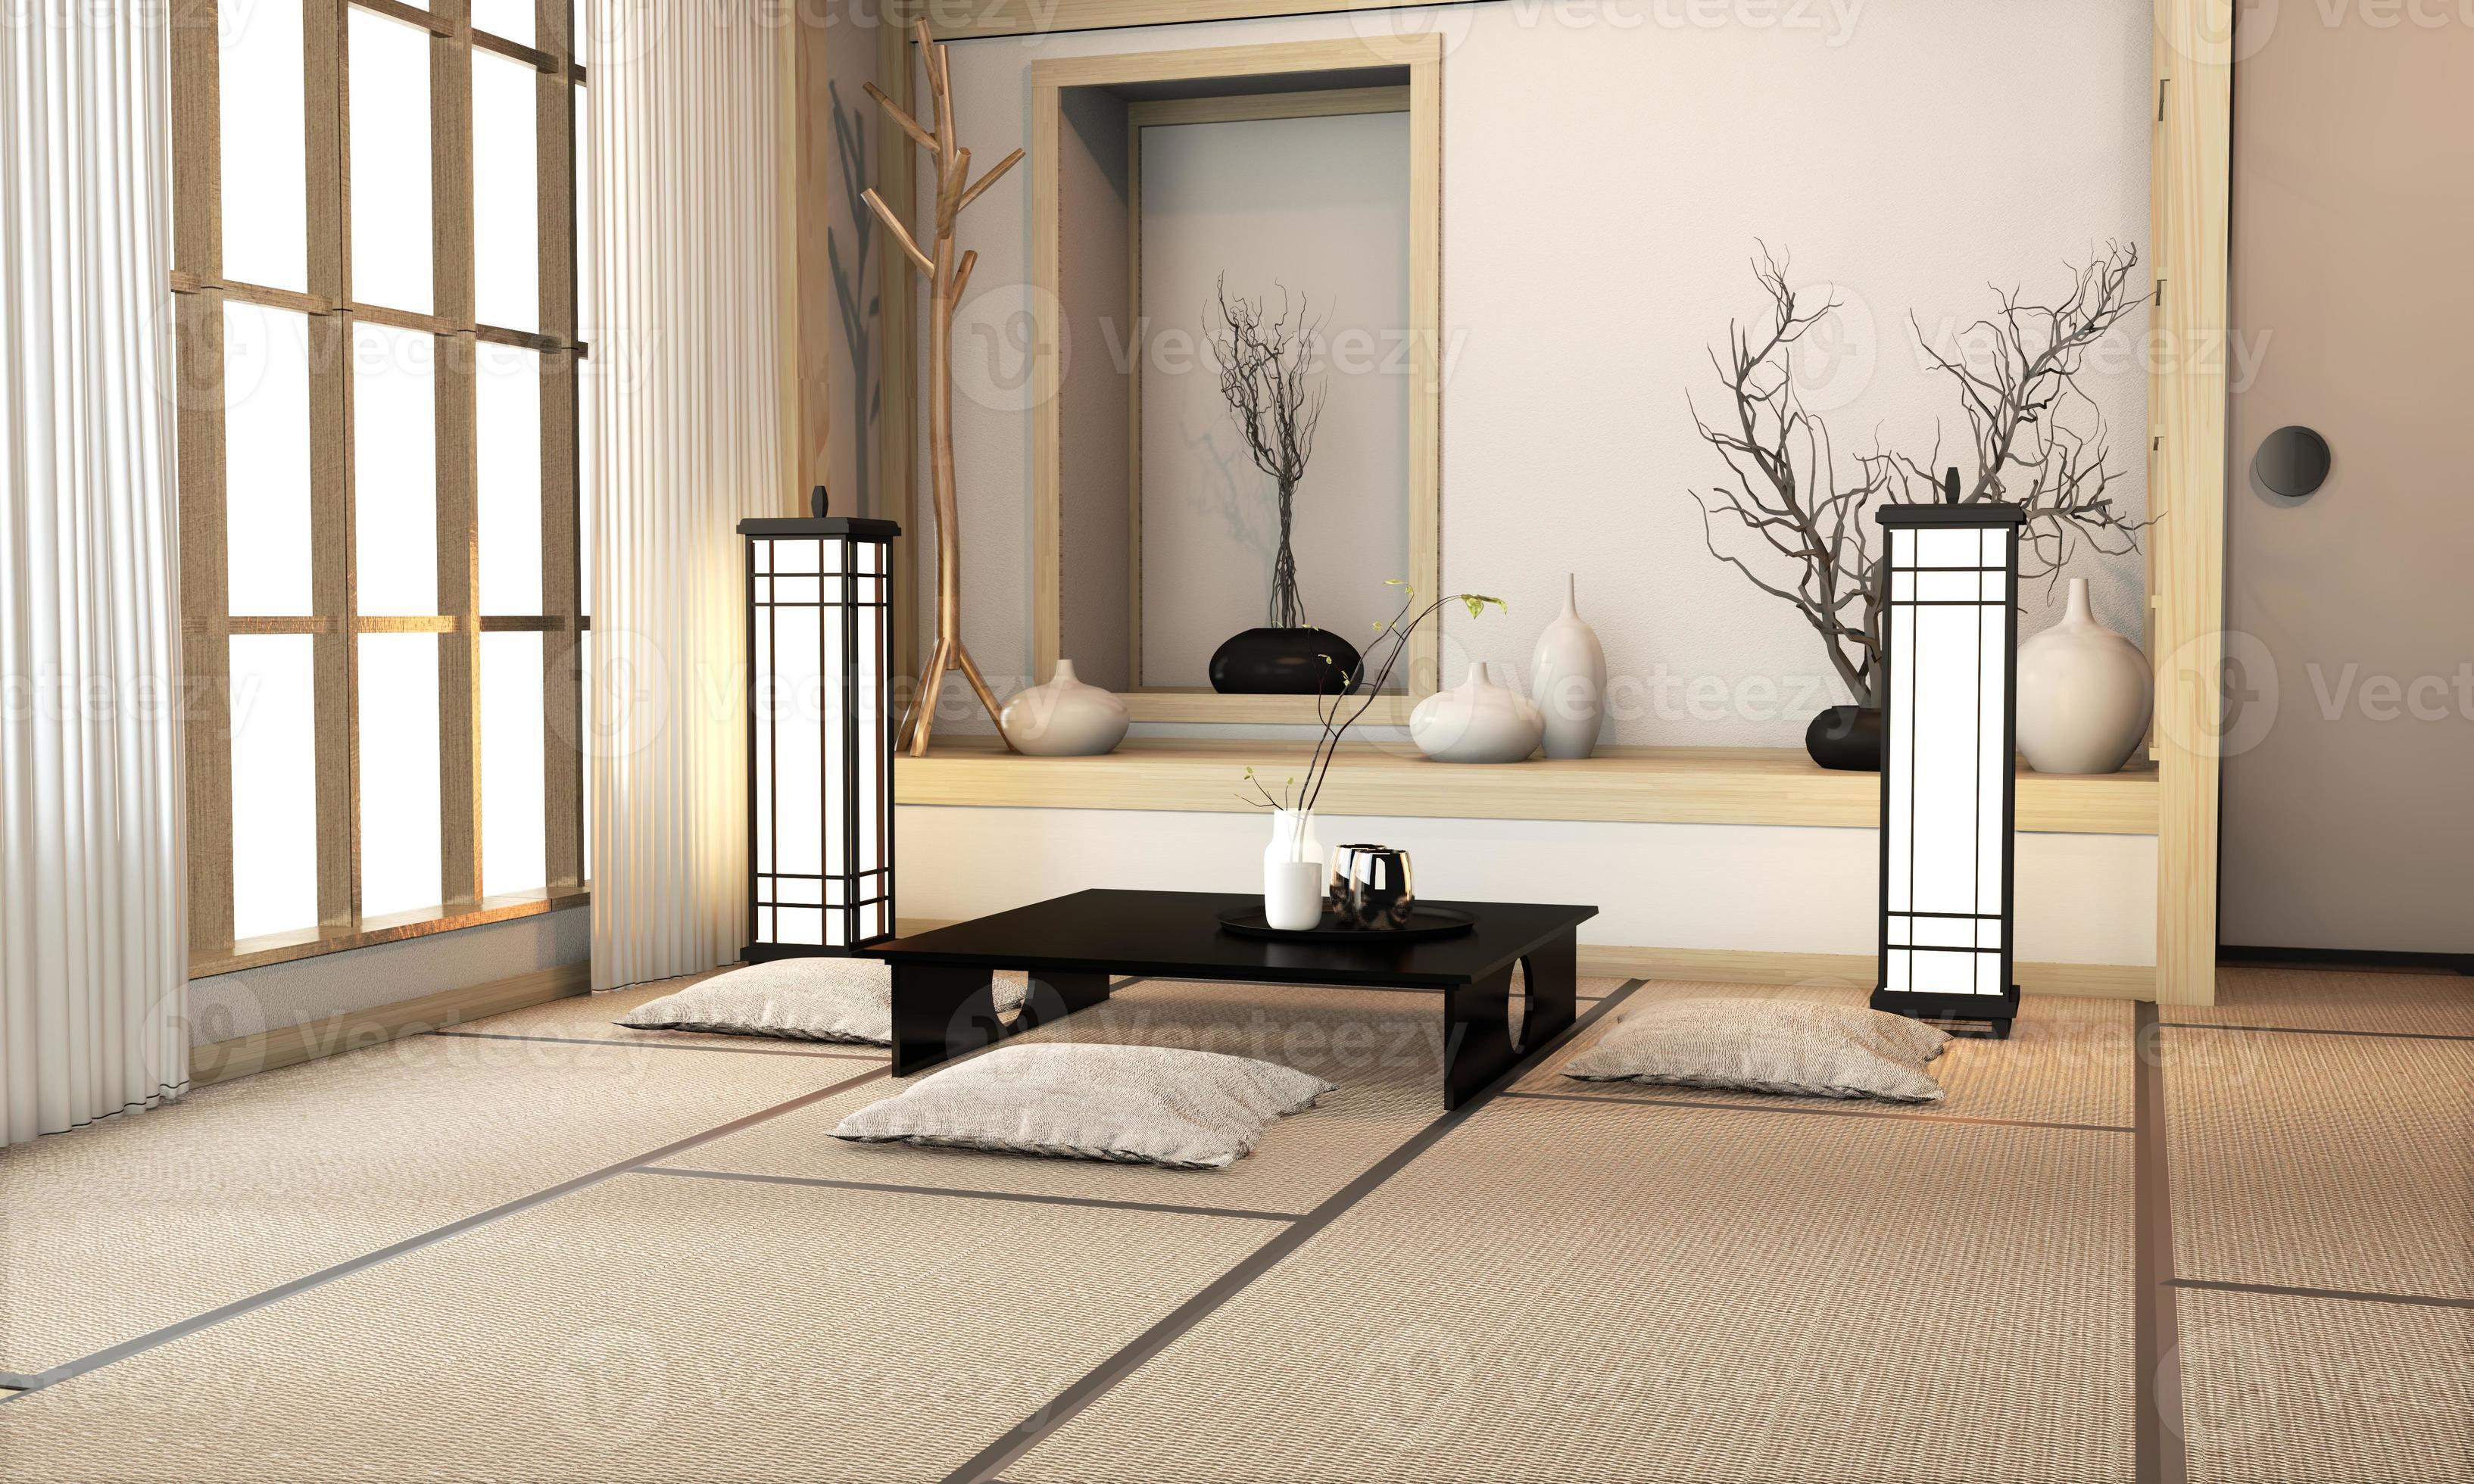 Diseño Interior De Habitación De Estilo Japonés Con Tatami Japonés